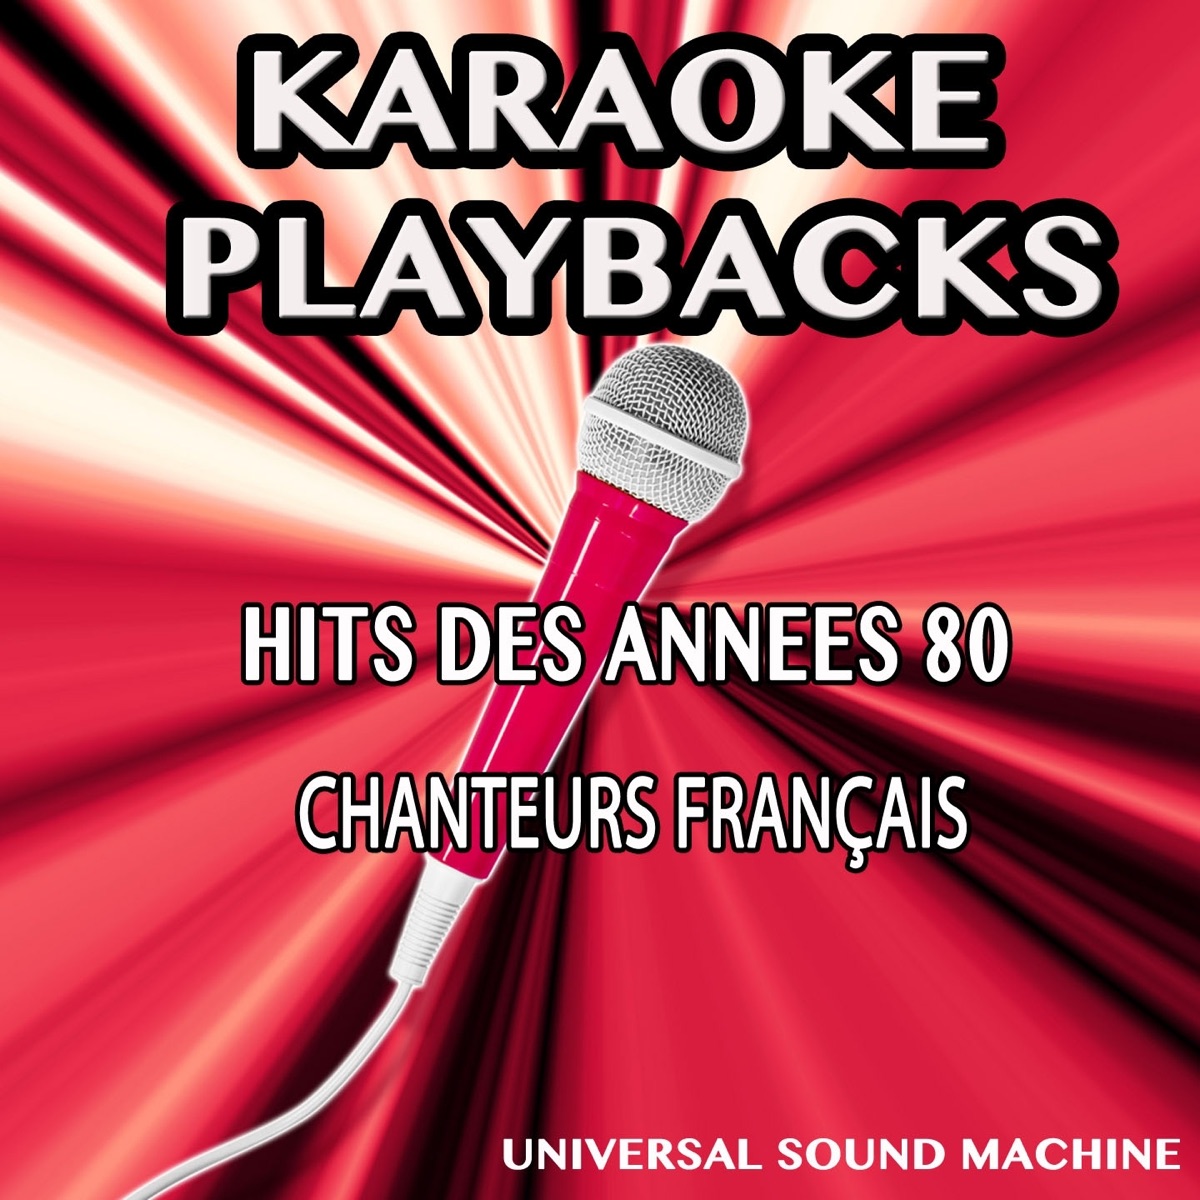 Hits des années 80 - Chanteurs français (Karaoke Playbacks) - Album by  Universal Sound Machine - Apple Music